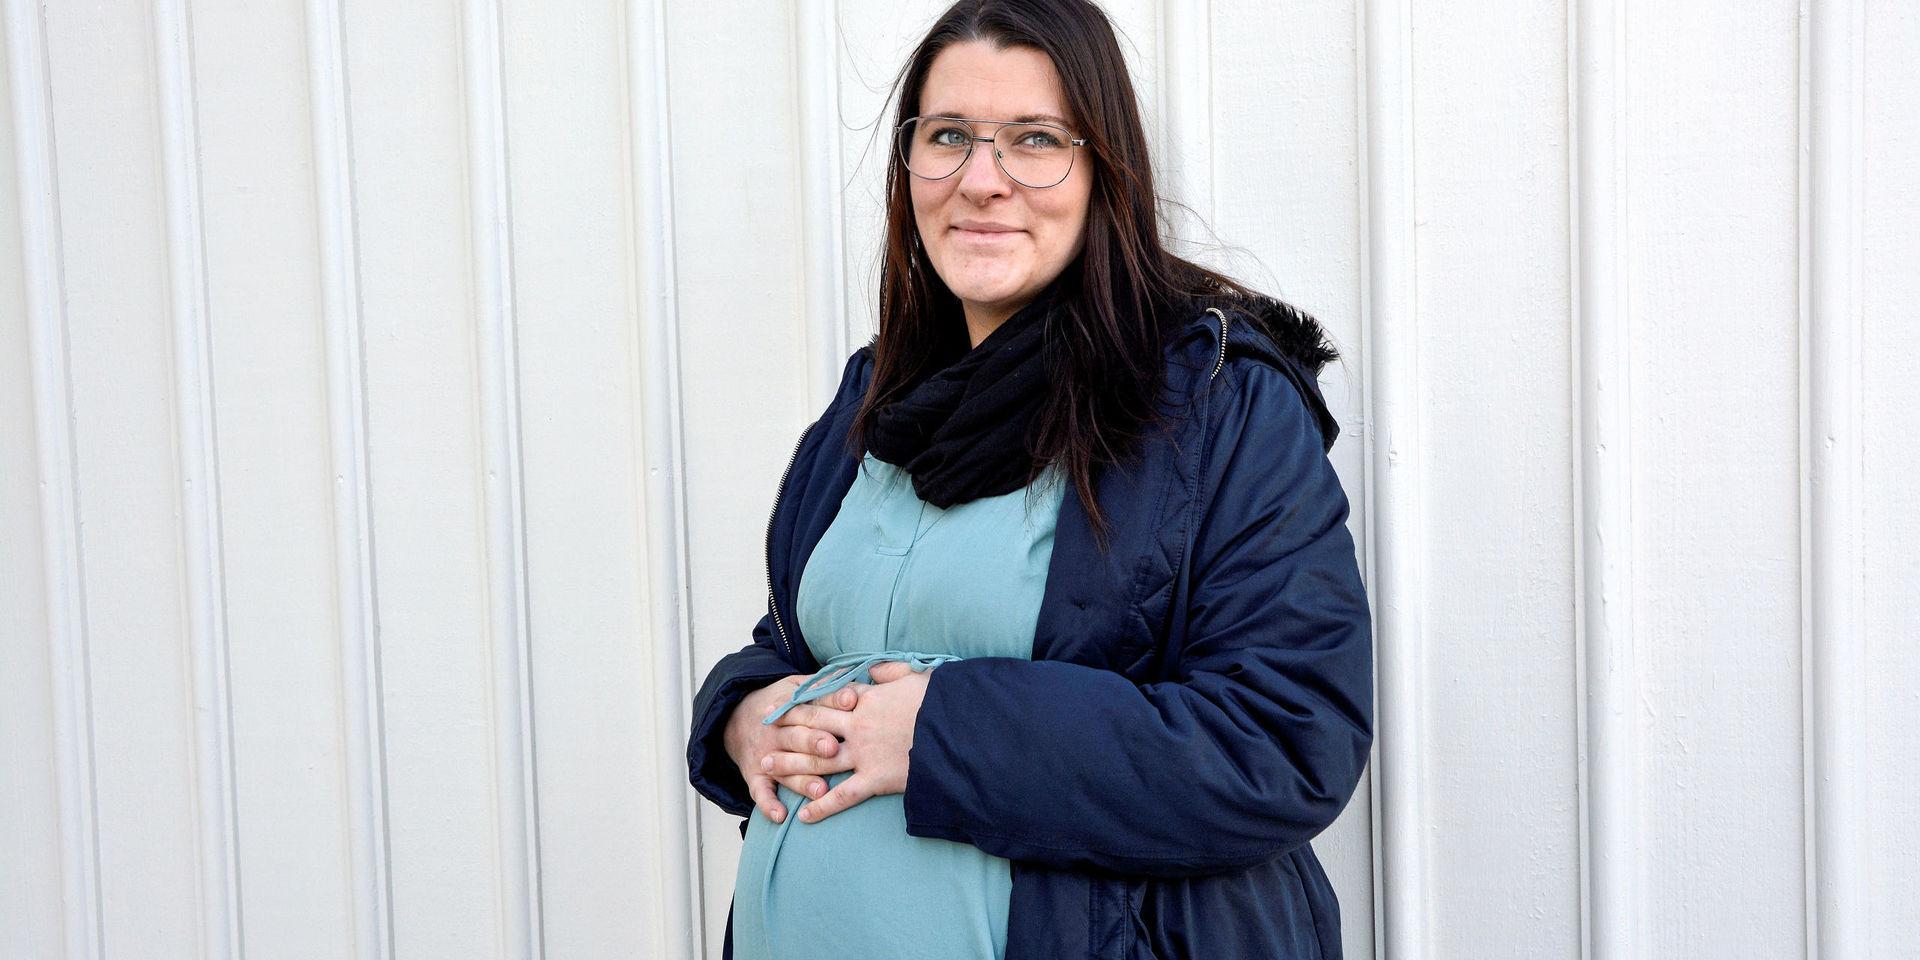 För sju år sedan förlorade Hanna Gustafsson sitt första barn, bara några dagar före beräknat förlossningsdatum. Nu väntar hon fjärde barnet och räknar med att bli igångsatt vecka 38.